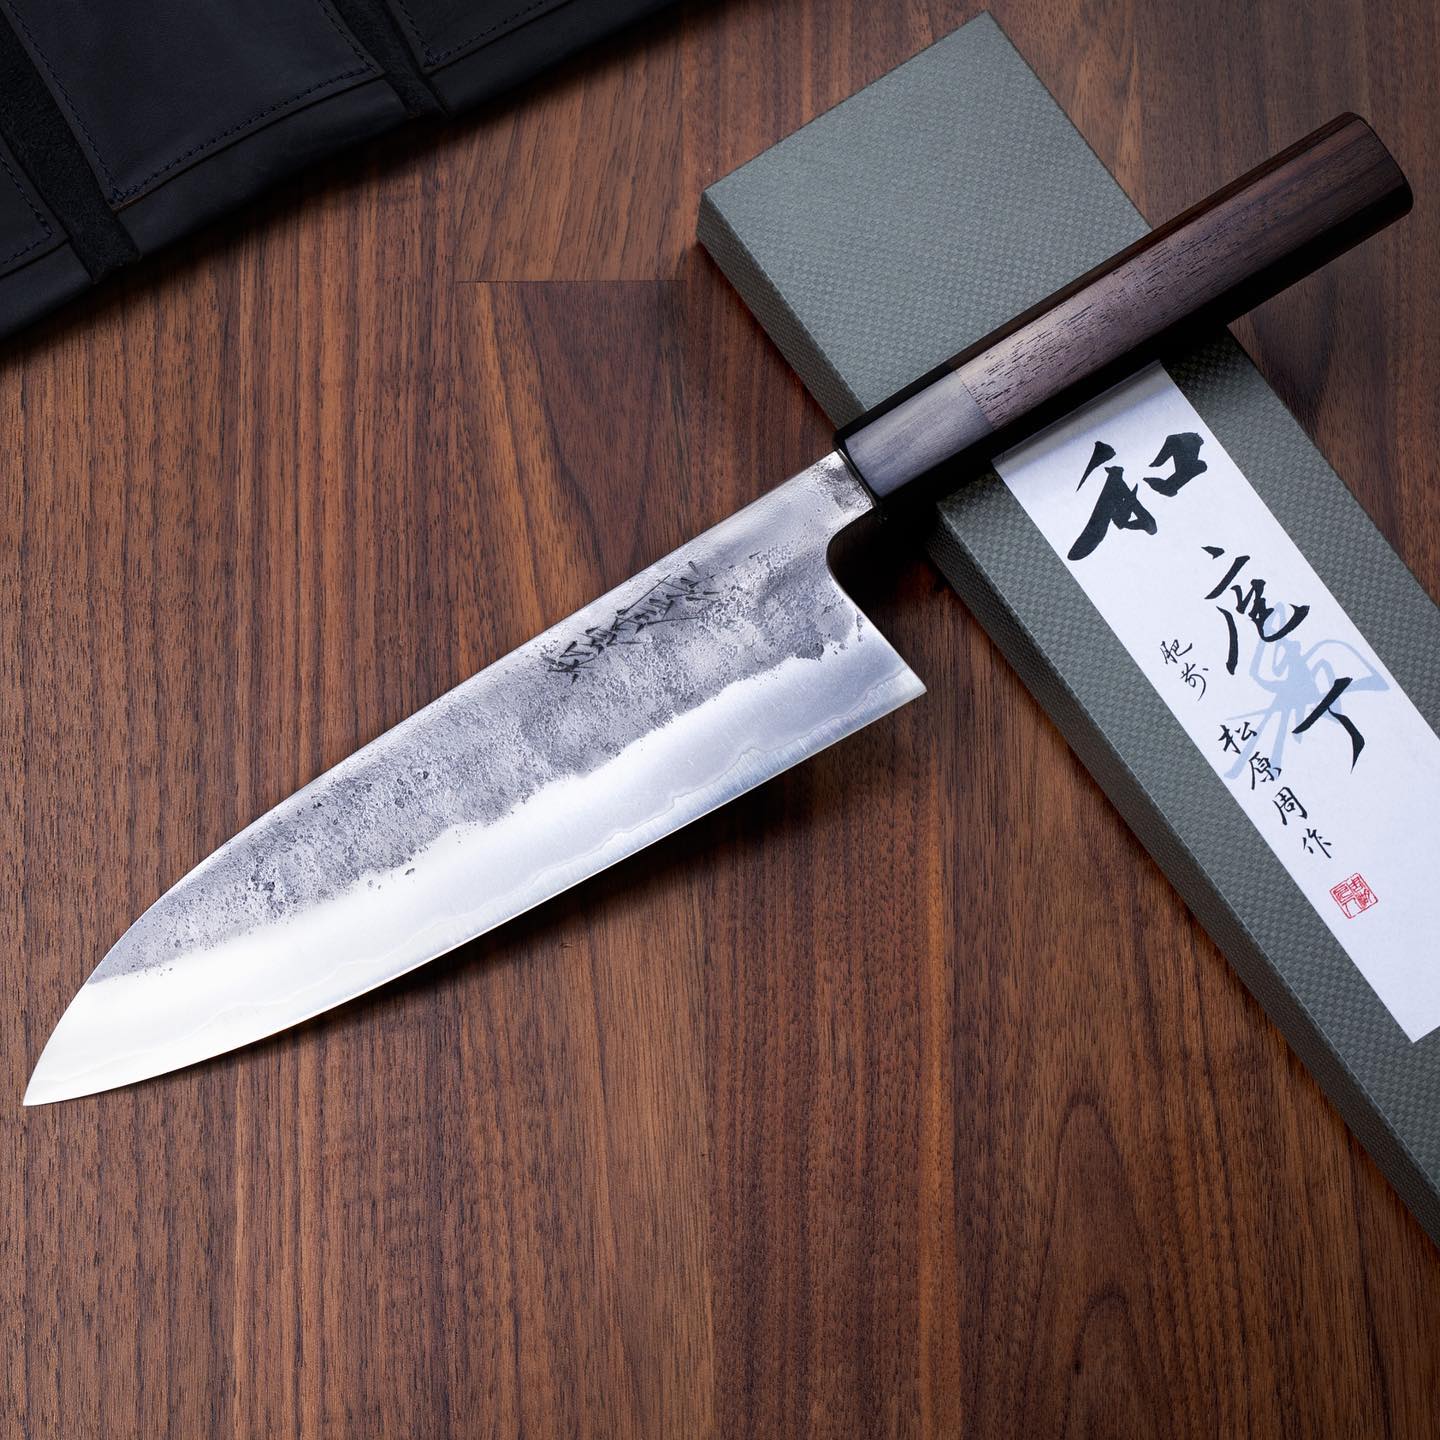 Waarom een Japans beste mes' is een kok